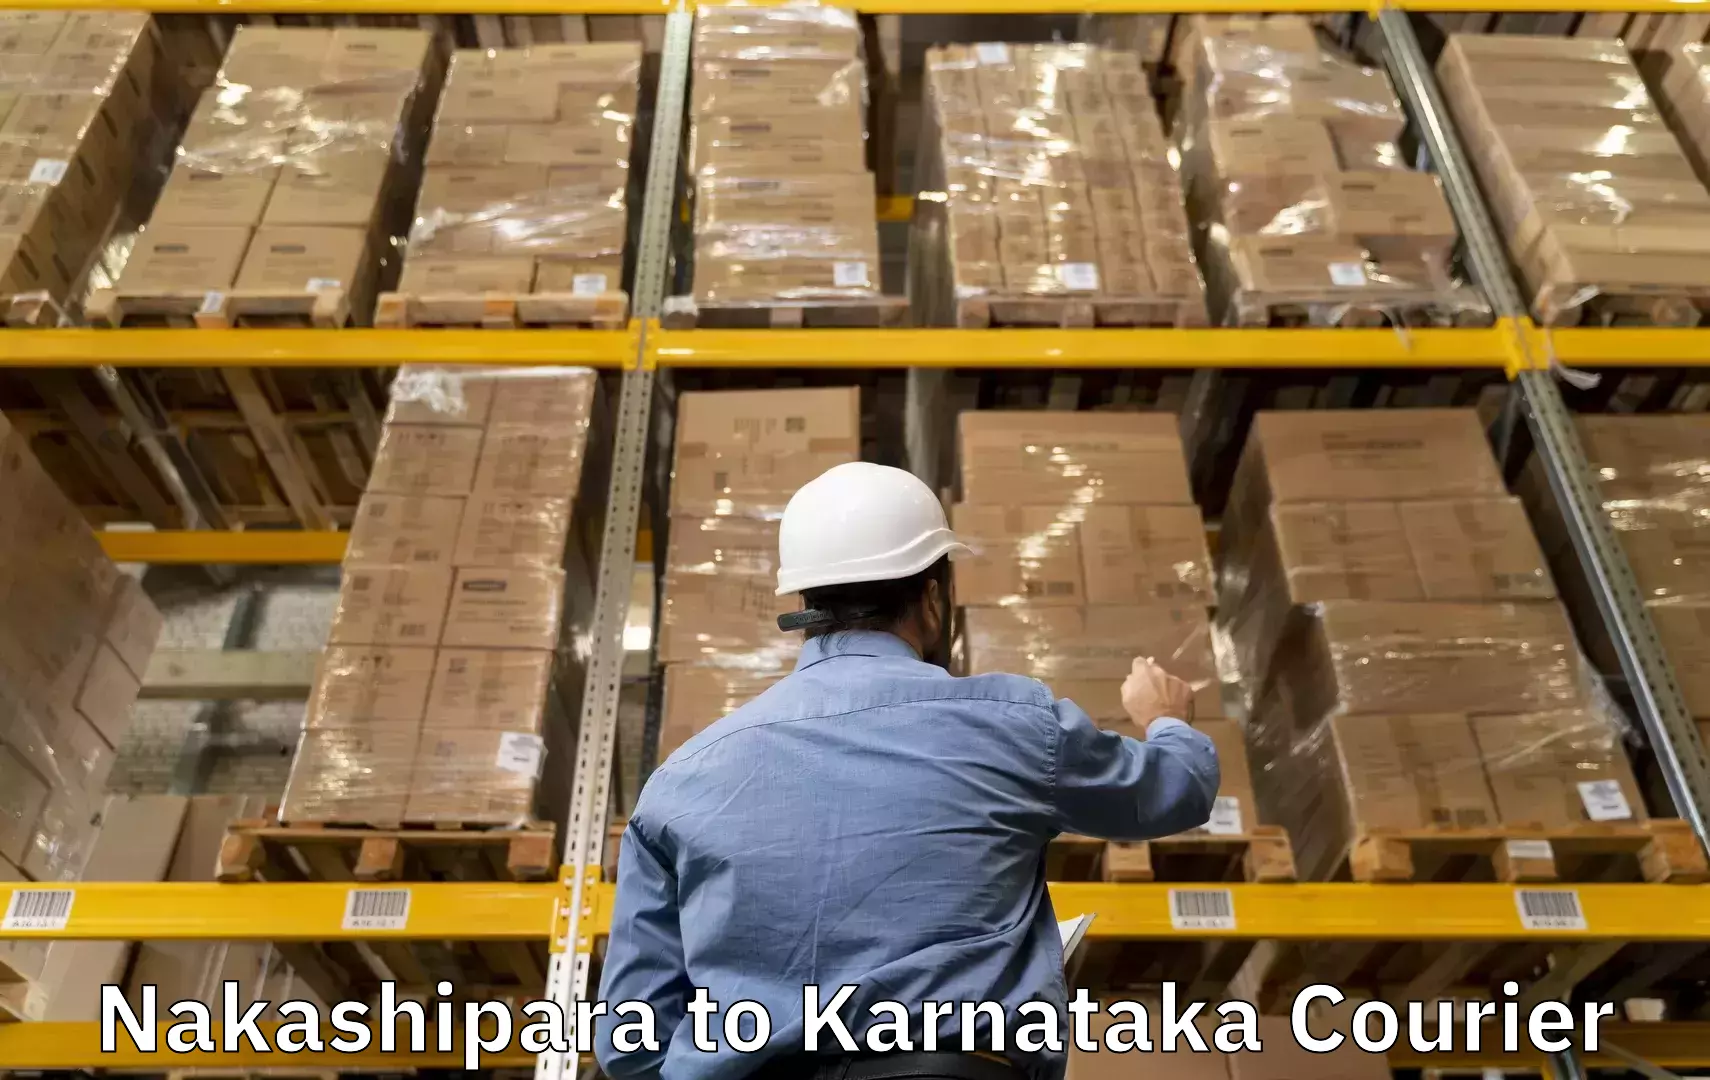 Luggage shipping planner Nakashipara to Bangarapet